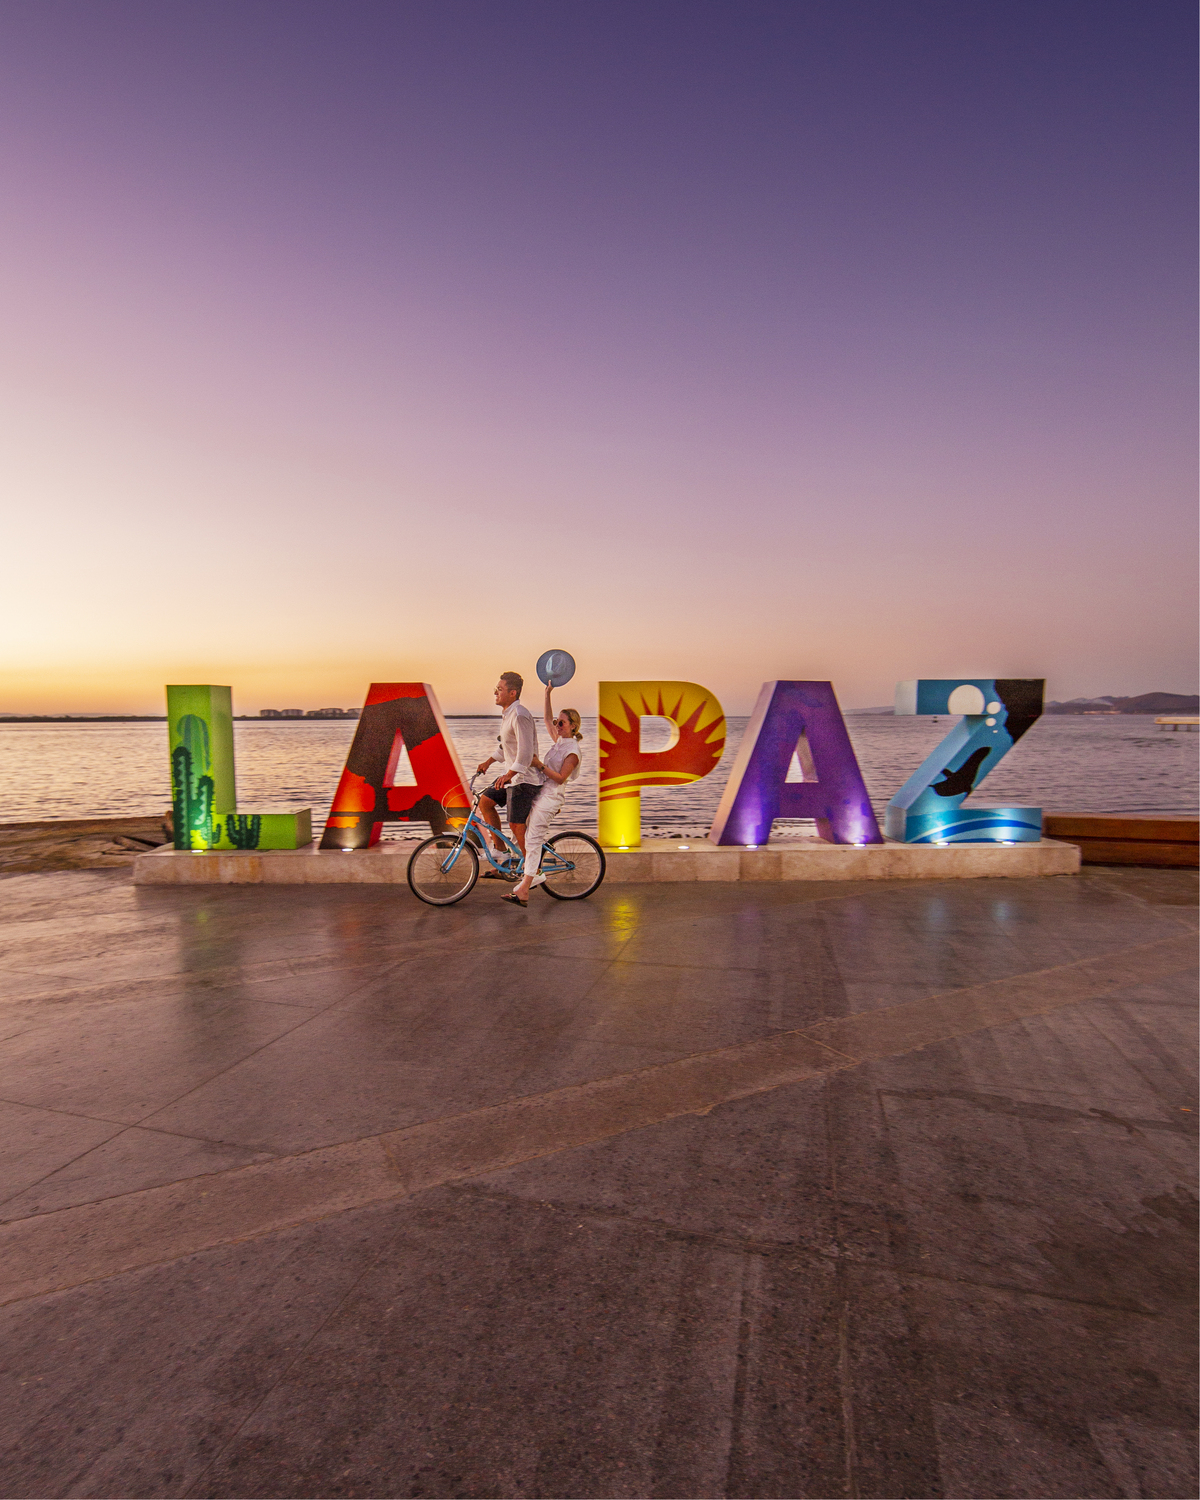 La Paz amplía su conectividad aérea con nuevos vuelos a la Ciudad de México, Mazatlán y Chihuahua